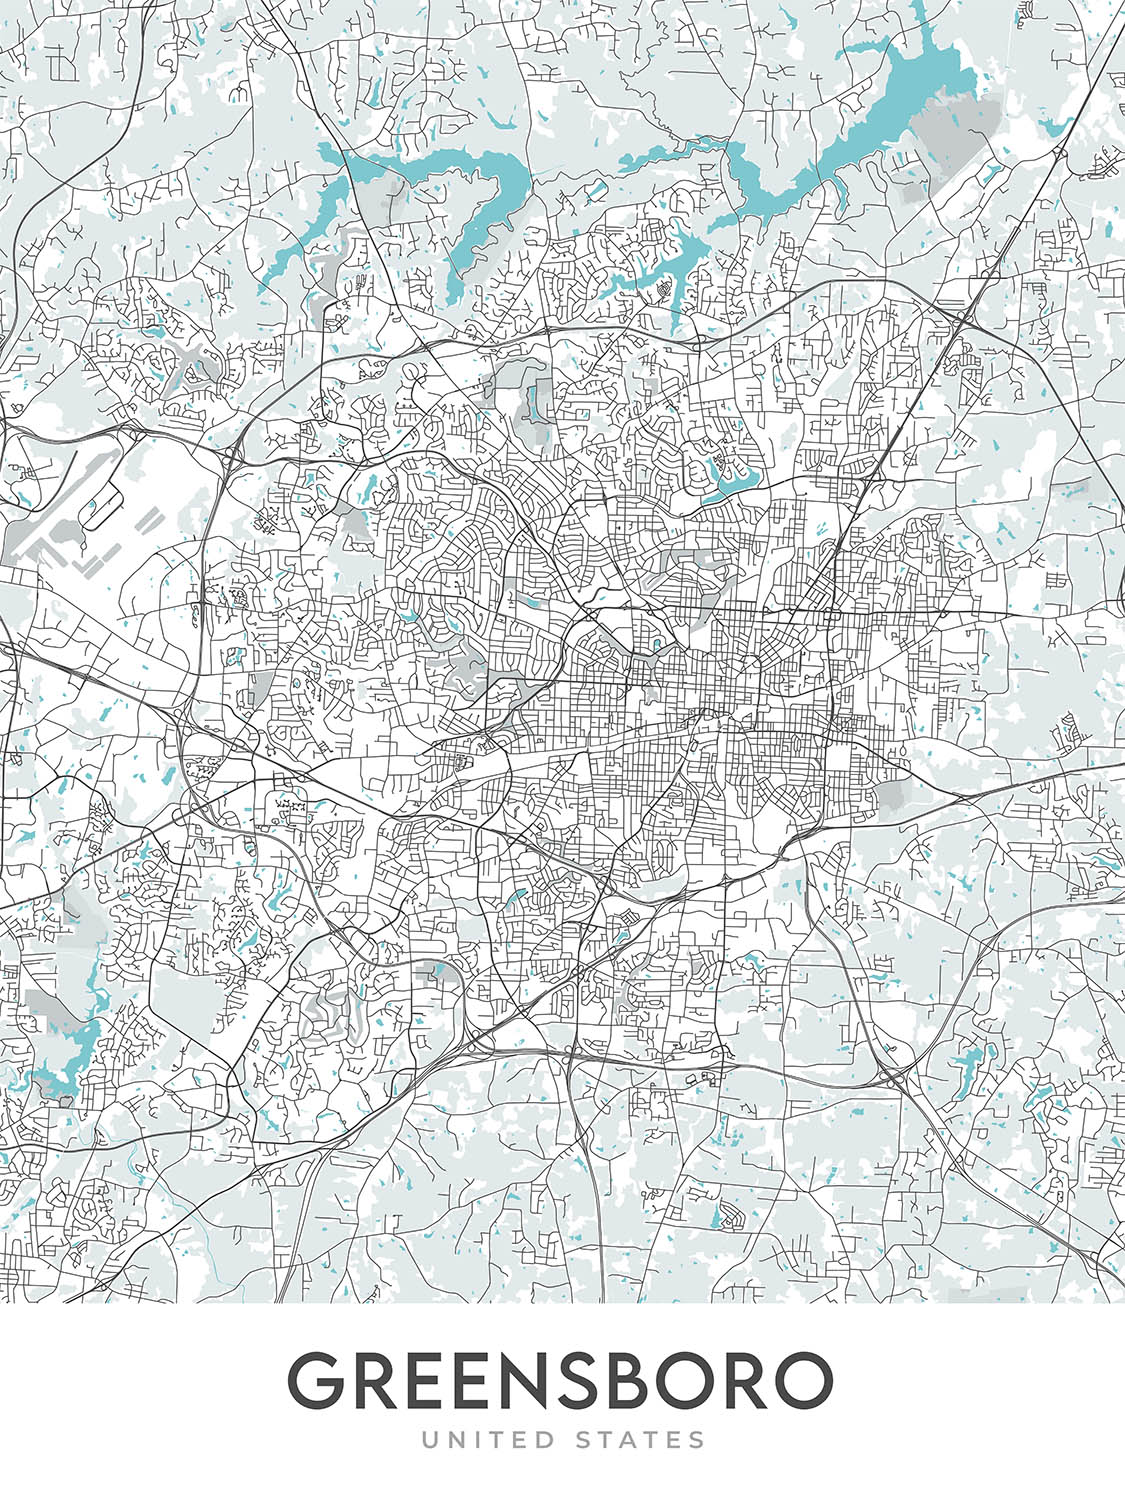 Mapa moderno de la ciudad de Greensboro, Carolina del Norte: centro, coliseo, universidad, I-40, I-85